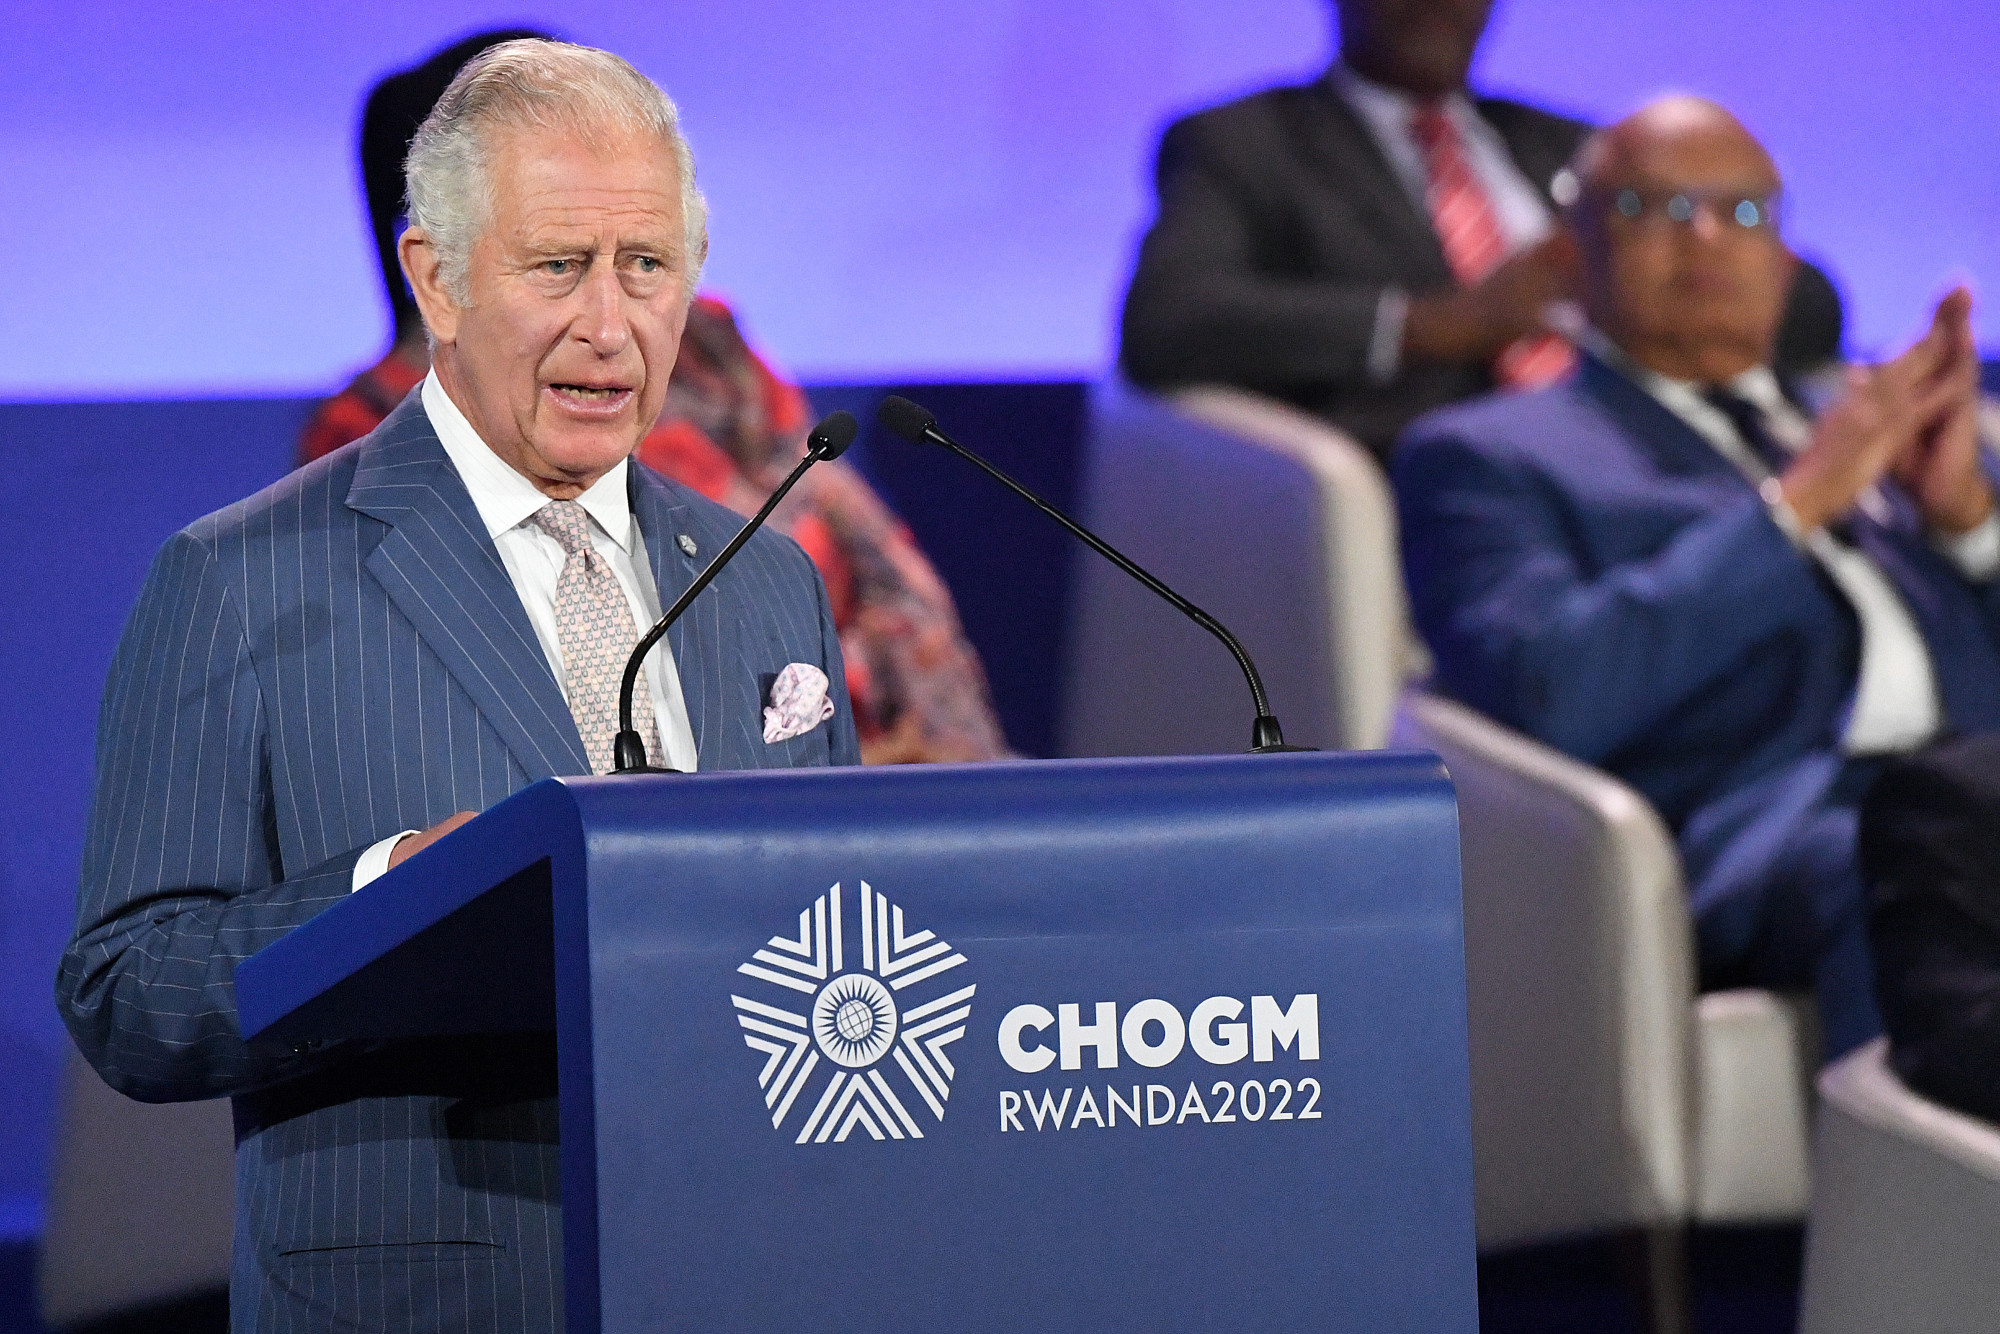 Károly herceg sajnálja, hogy a rabszolgatartás határozta meg a Nemzetközösség kialakulását